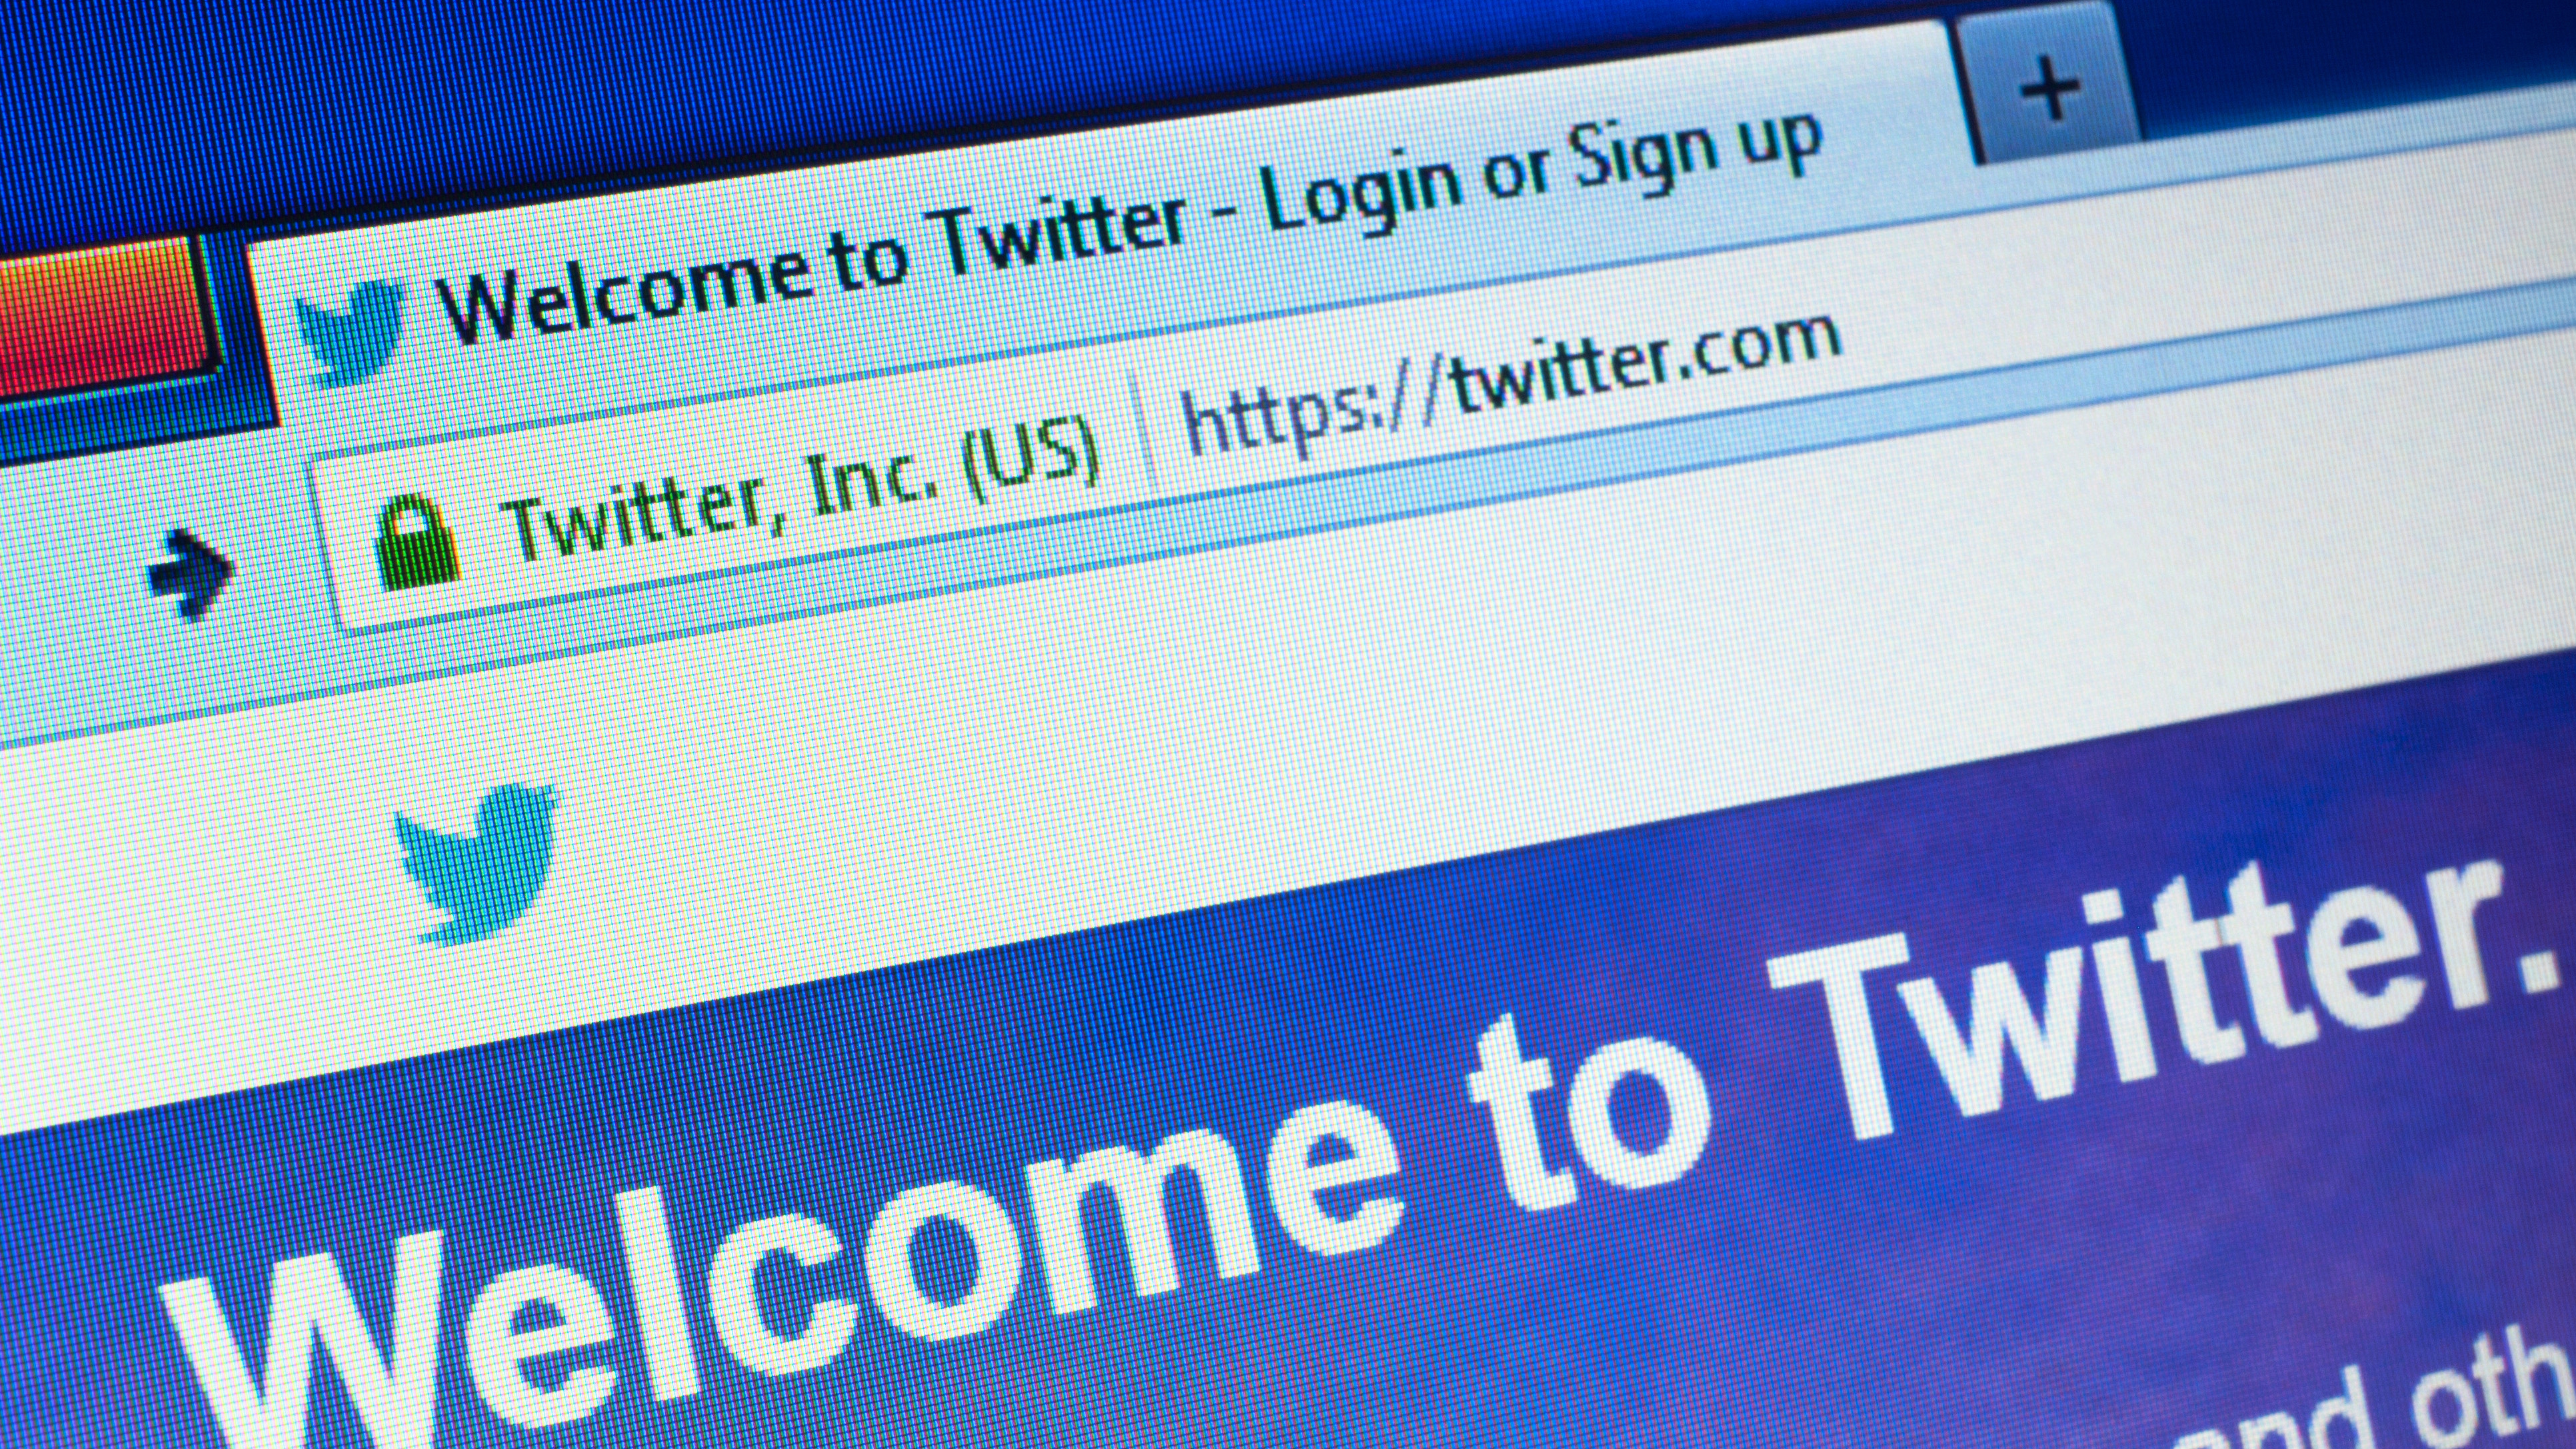 スクリーンに映し出されたTwitter.comのホームページ。Twitterはオンライン・ソーシャル・ネットワーキングおよびマイクロブログ・サービスである。